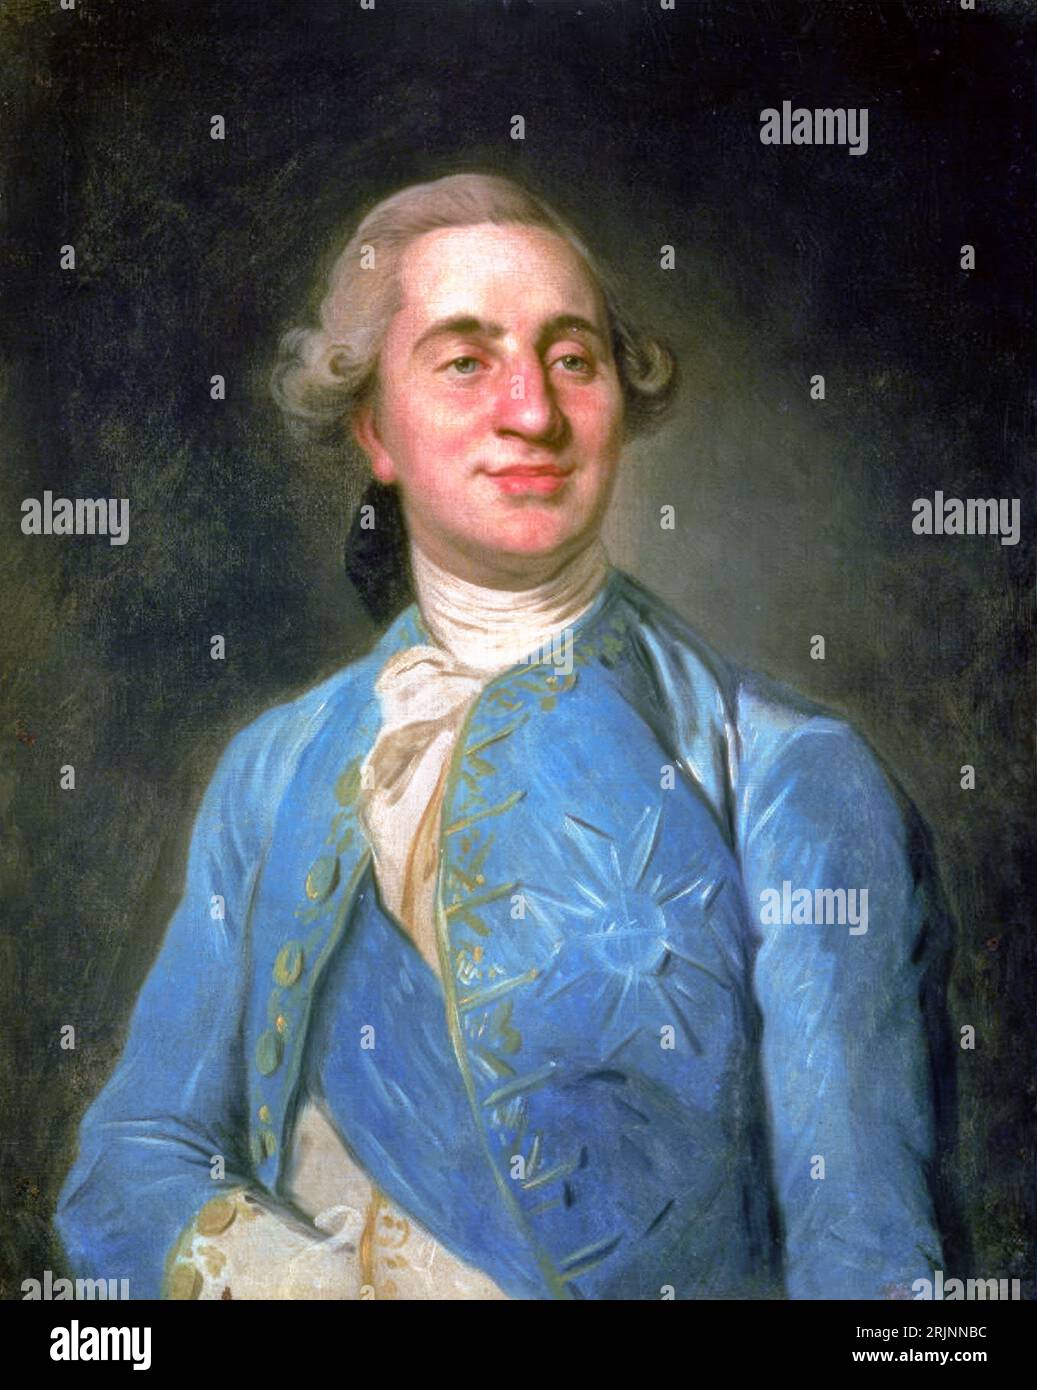 Roi Louis XVI de France, portrait à l'huile sur toile de Joseph Duplessis, 1775 Banque D'Images